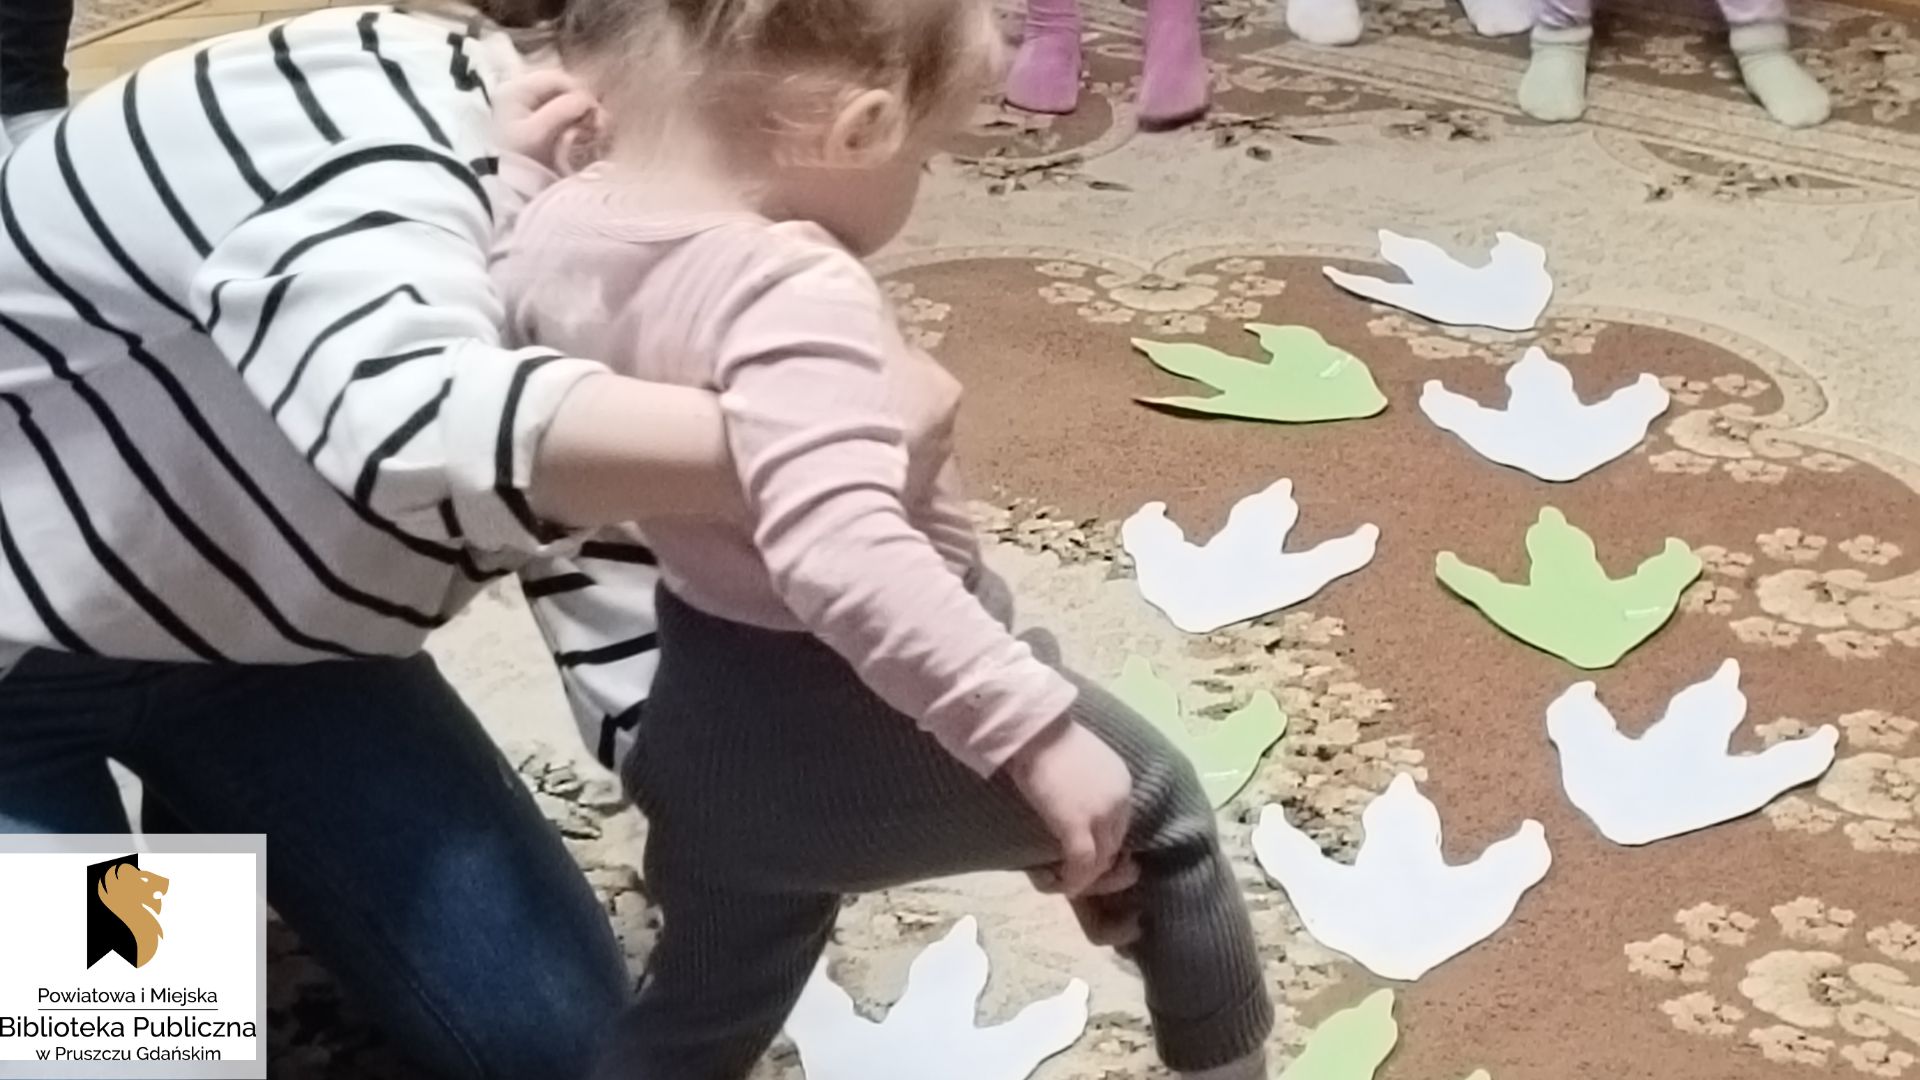 Mała dziewczynka, podtrzymywana przez mamę, idzie po śladach dinozaura, wyciętych z papieru